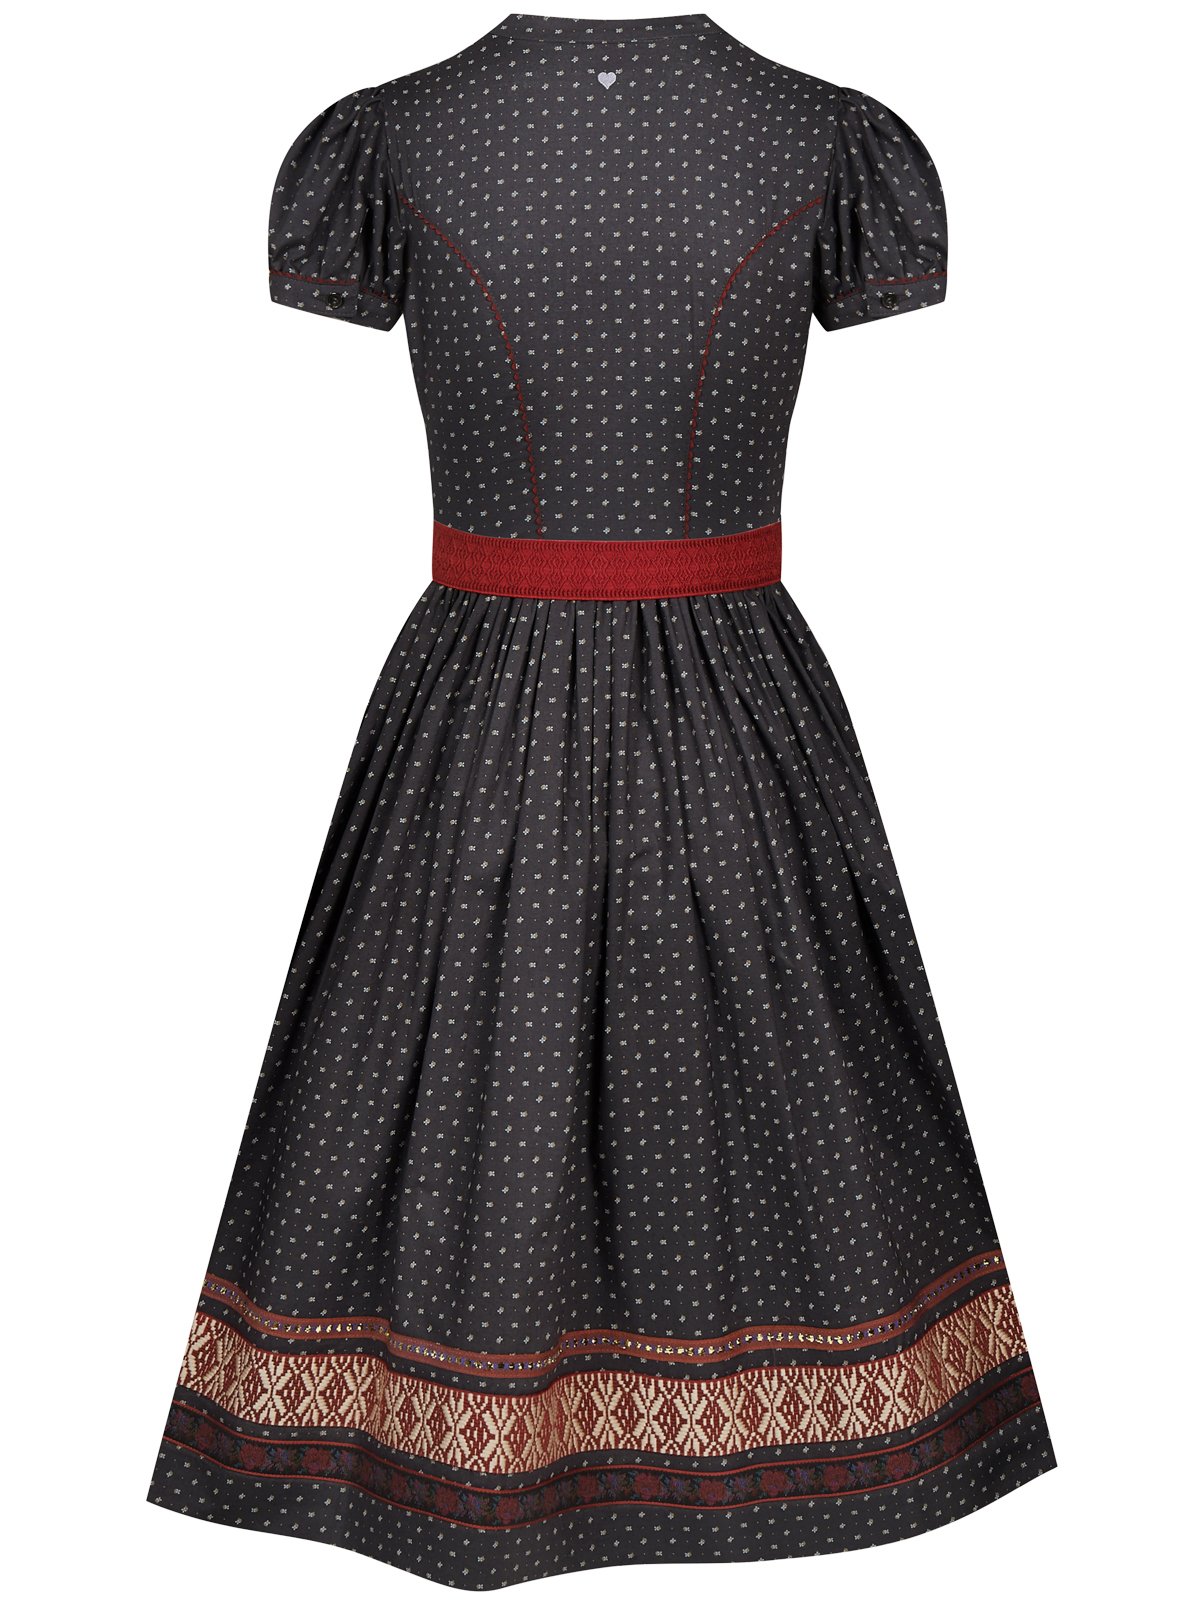 Schwarzes Kleid mit Streublumenmuster